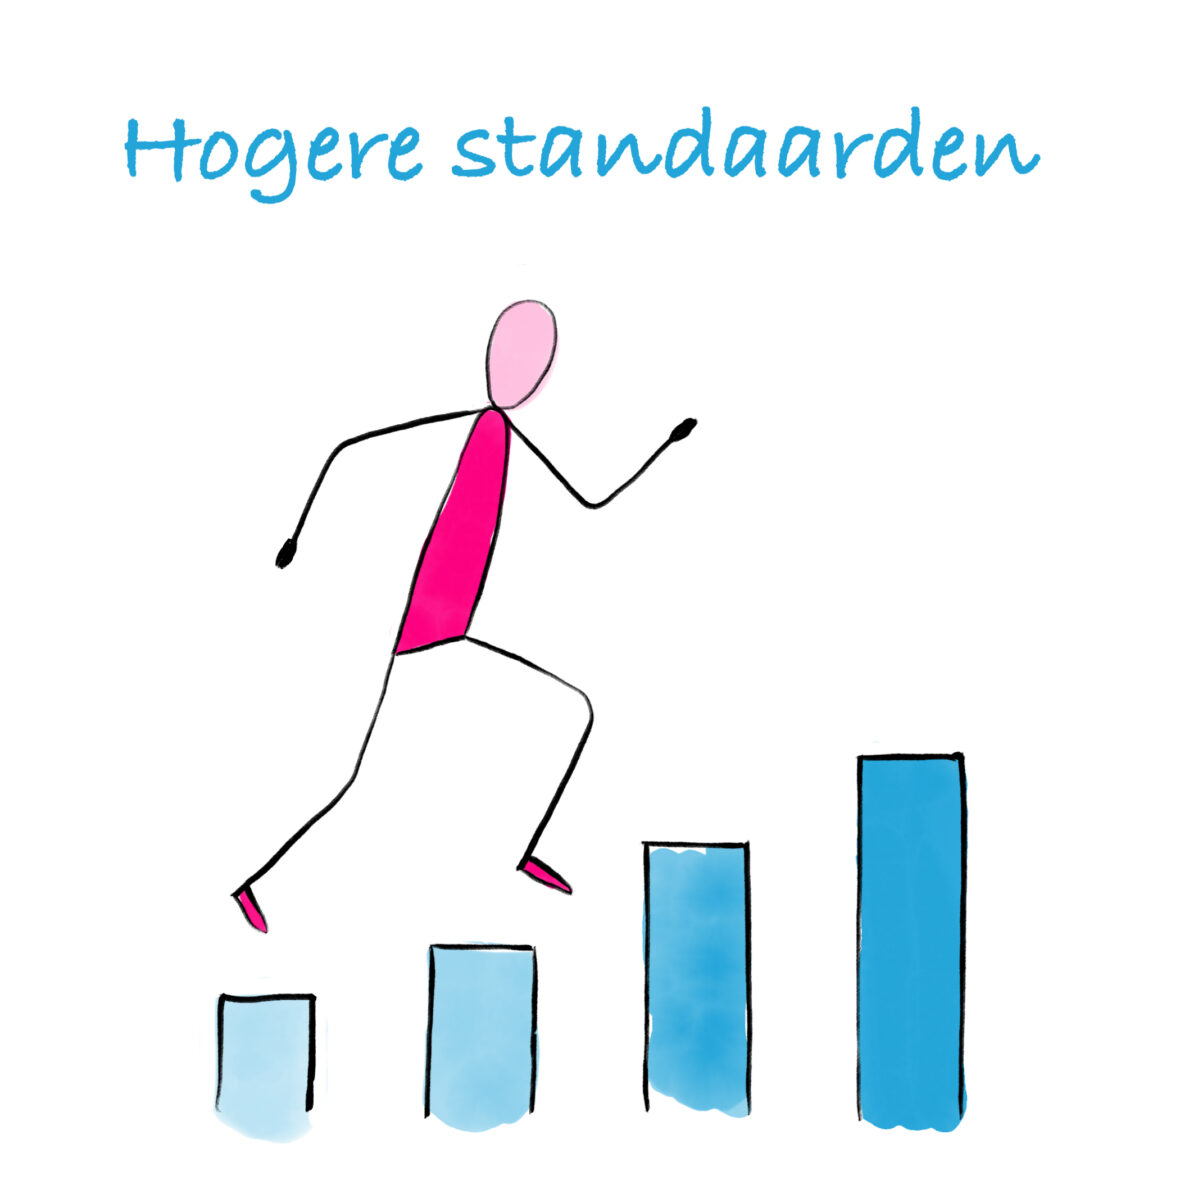 Ninke van der Leck over hogere standaarden in 5 star business - cartoon